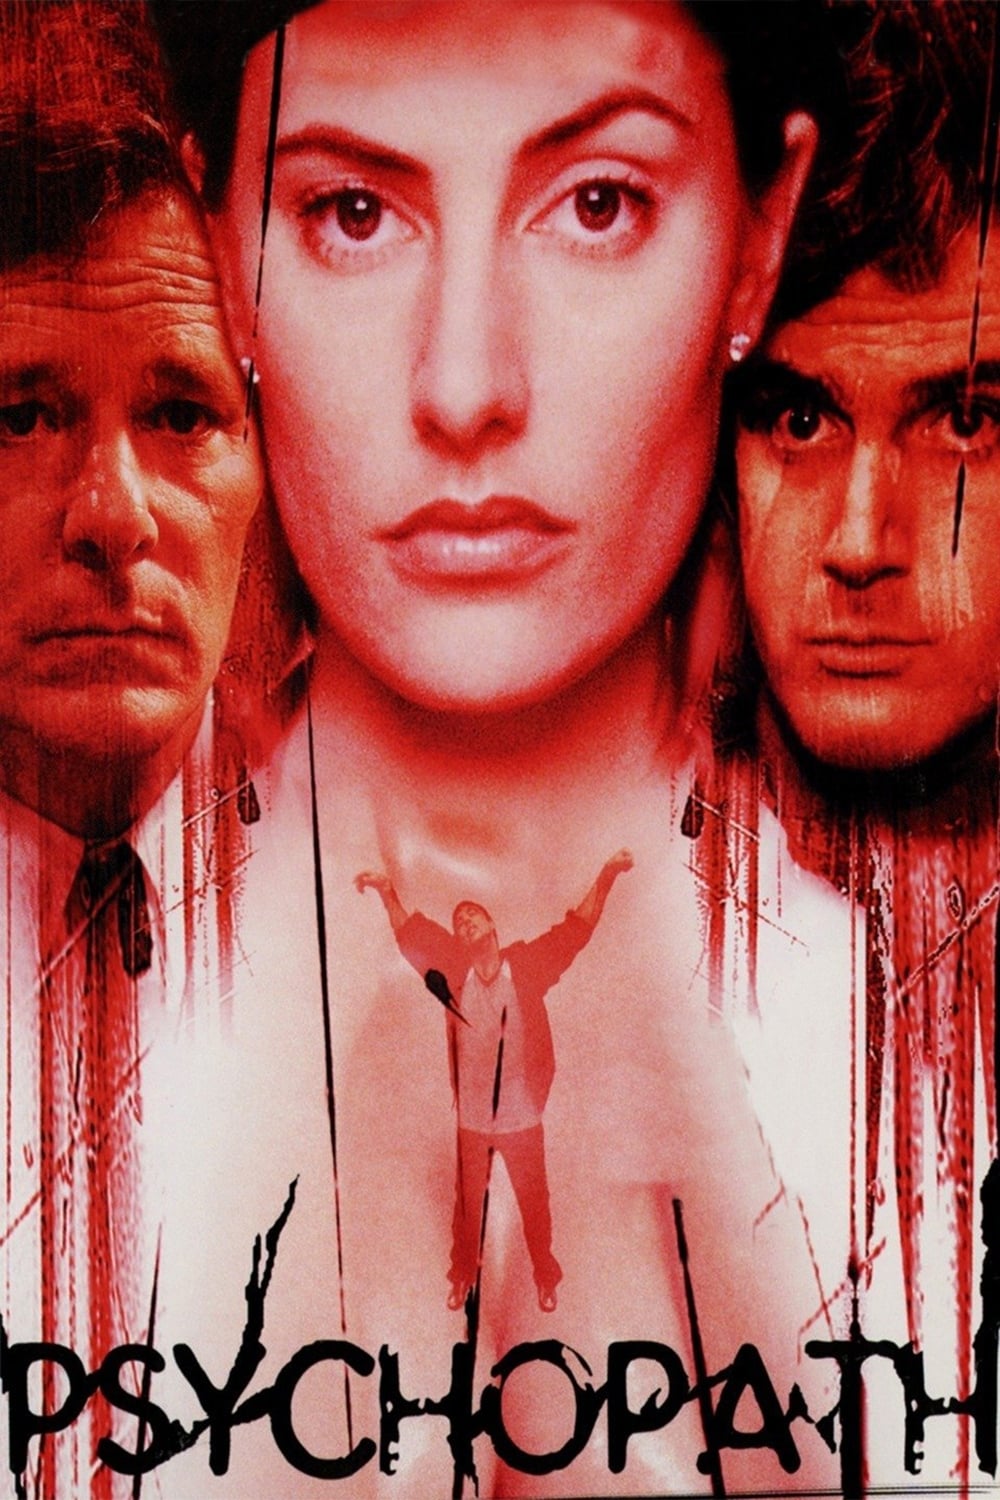 Psychopath (1998)